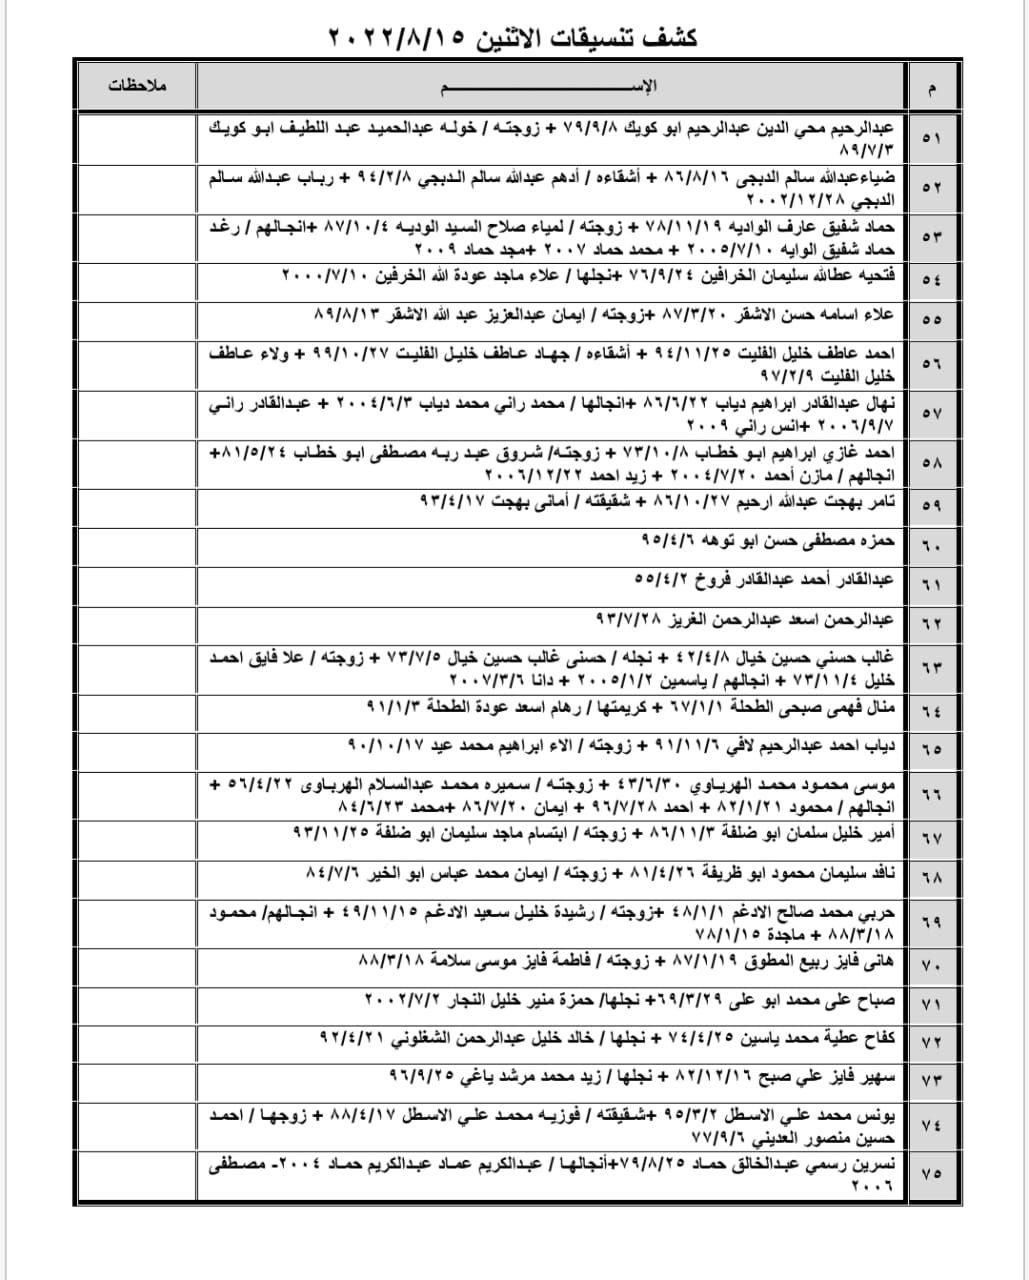 بالأسماء: داخلية غزّة تنشر كشف "التنسيقات المصرية" ليوم الإثنين 15 أغسطس 2022